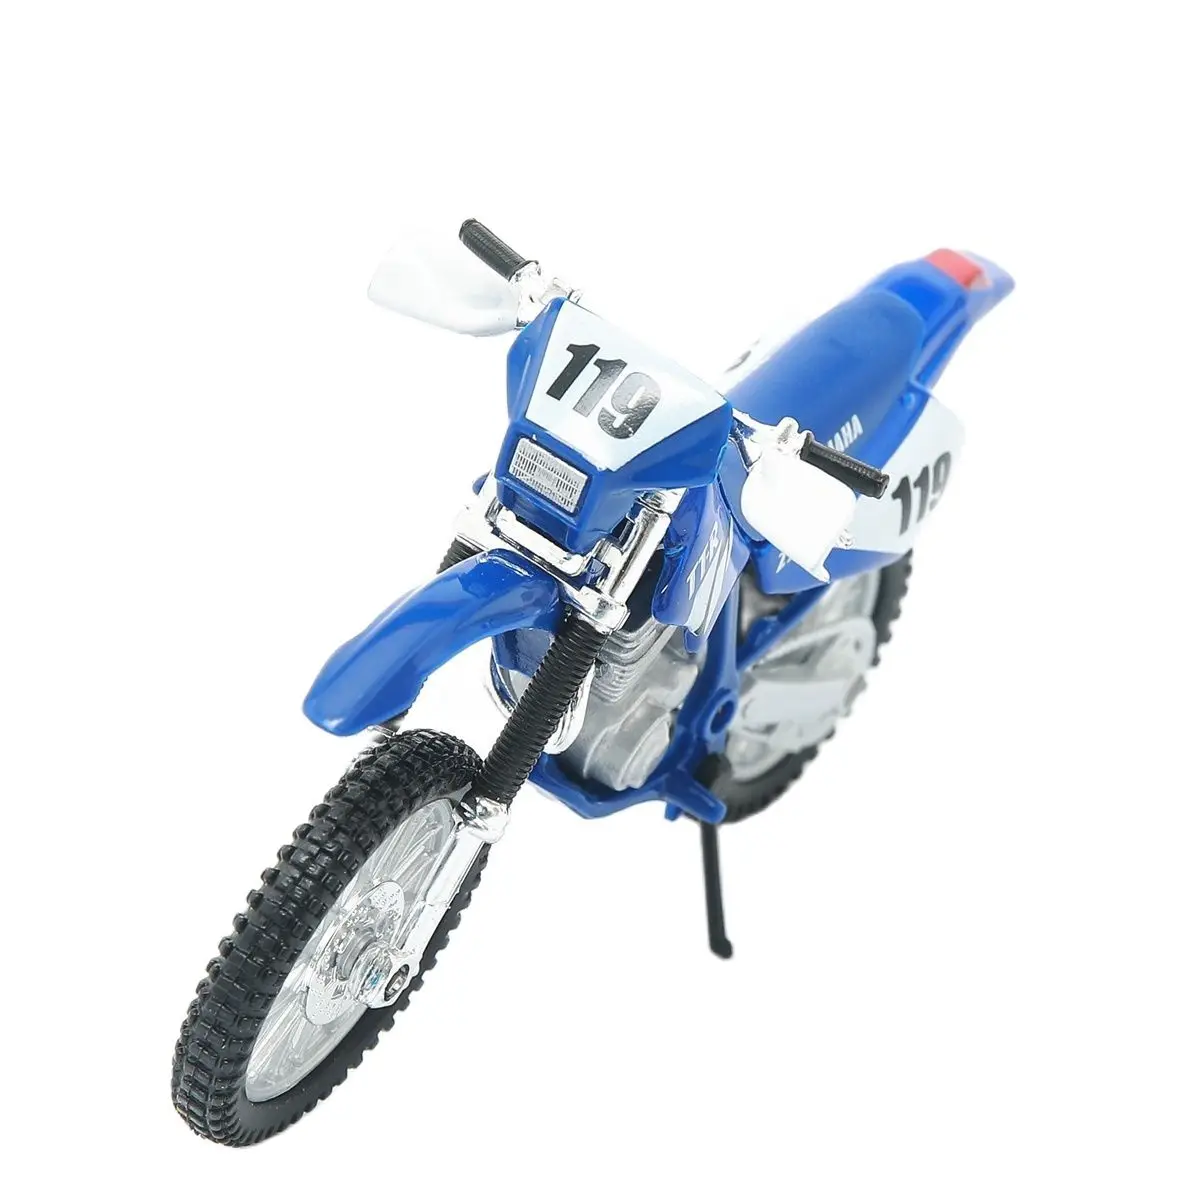 Maisto Moto Yamaha TTR 250 escala 1/18 - Arte em Miniaturas